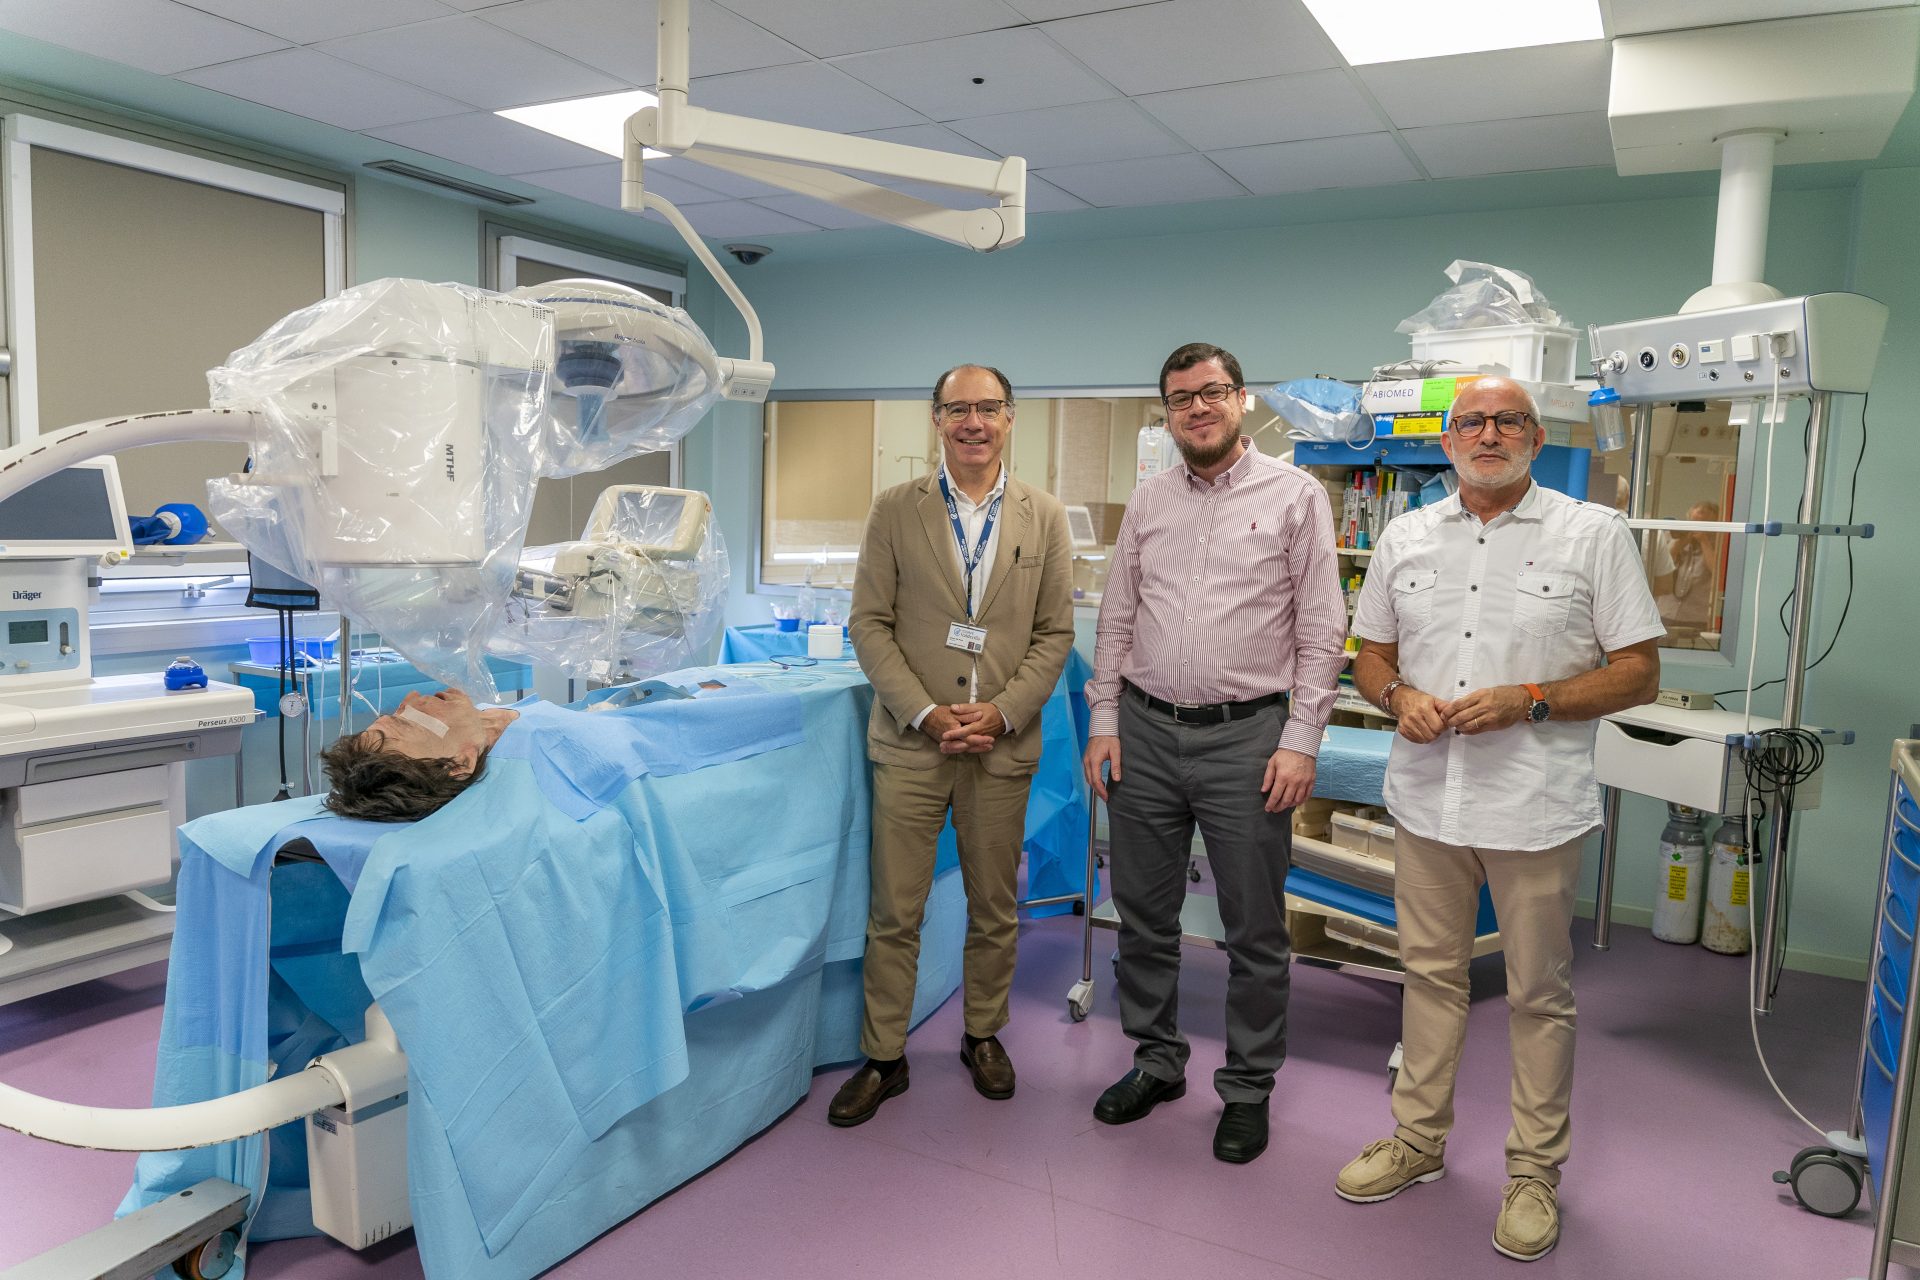 El coordinador del proyecto, Miguel Rodríguez (d), junto a la delegación de Jordania, han visitado el Hospital Virtual Valdecilla en Santander, dentro de un proyecto de cooperación del Ministerio de Sanidad, financiado por la UE. EFE/ Román G. Aguilera.